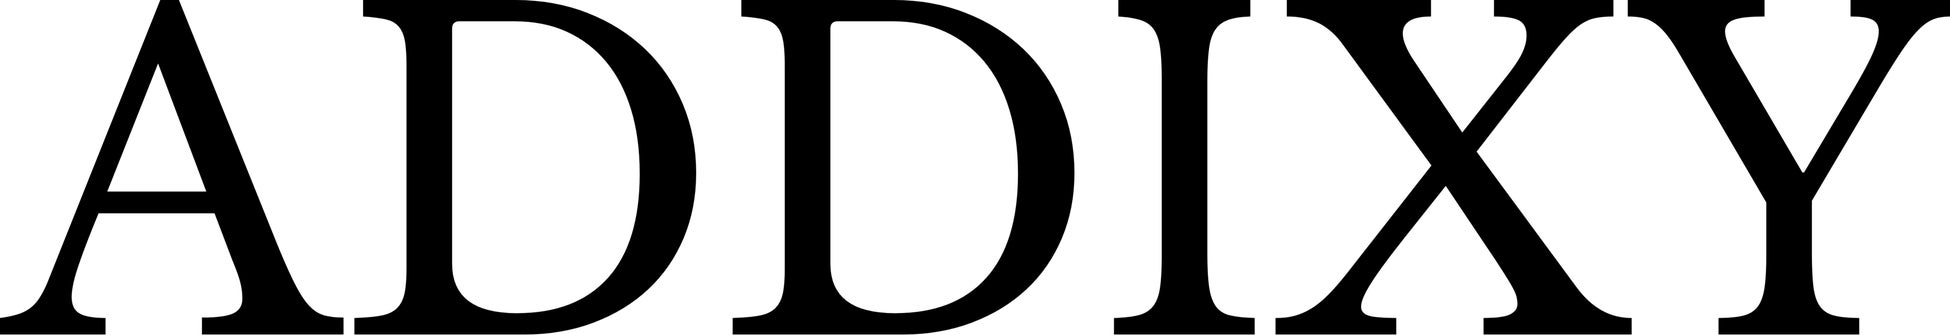 「大人向けのエレガントなロックスタイル」を提案するユニセックスアパレルブランド「ADDIXY」秋冬シーズンの展示受注会を10/13(木)-10/16(日)の4日間恵比寿で開催のサブ画像11